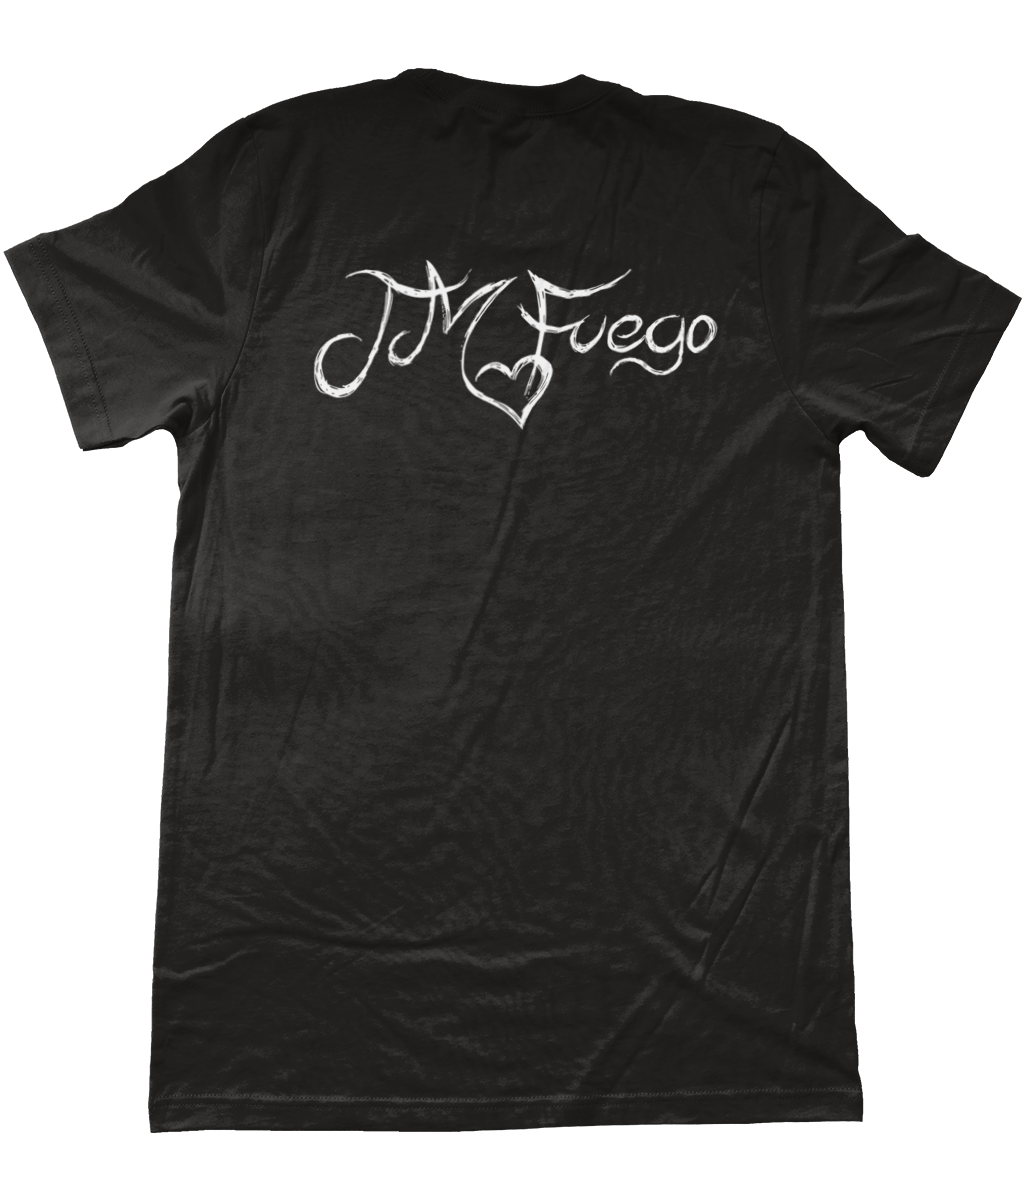 JM Fuego T-Shirt